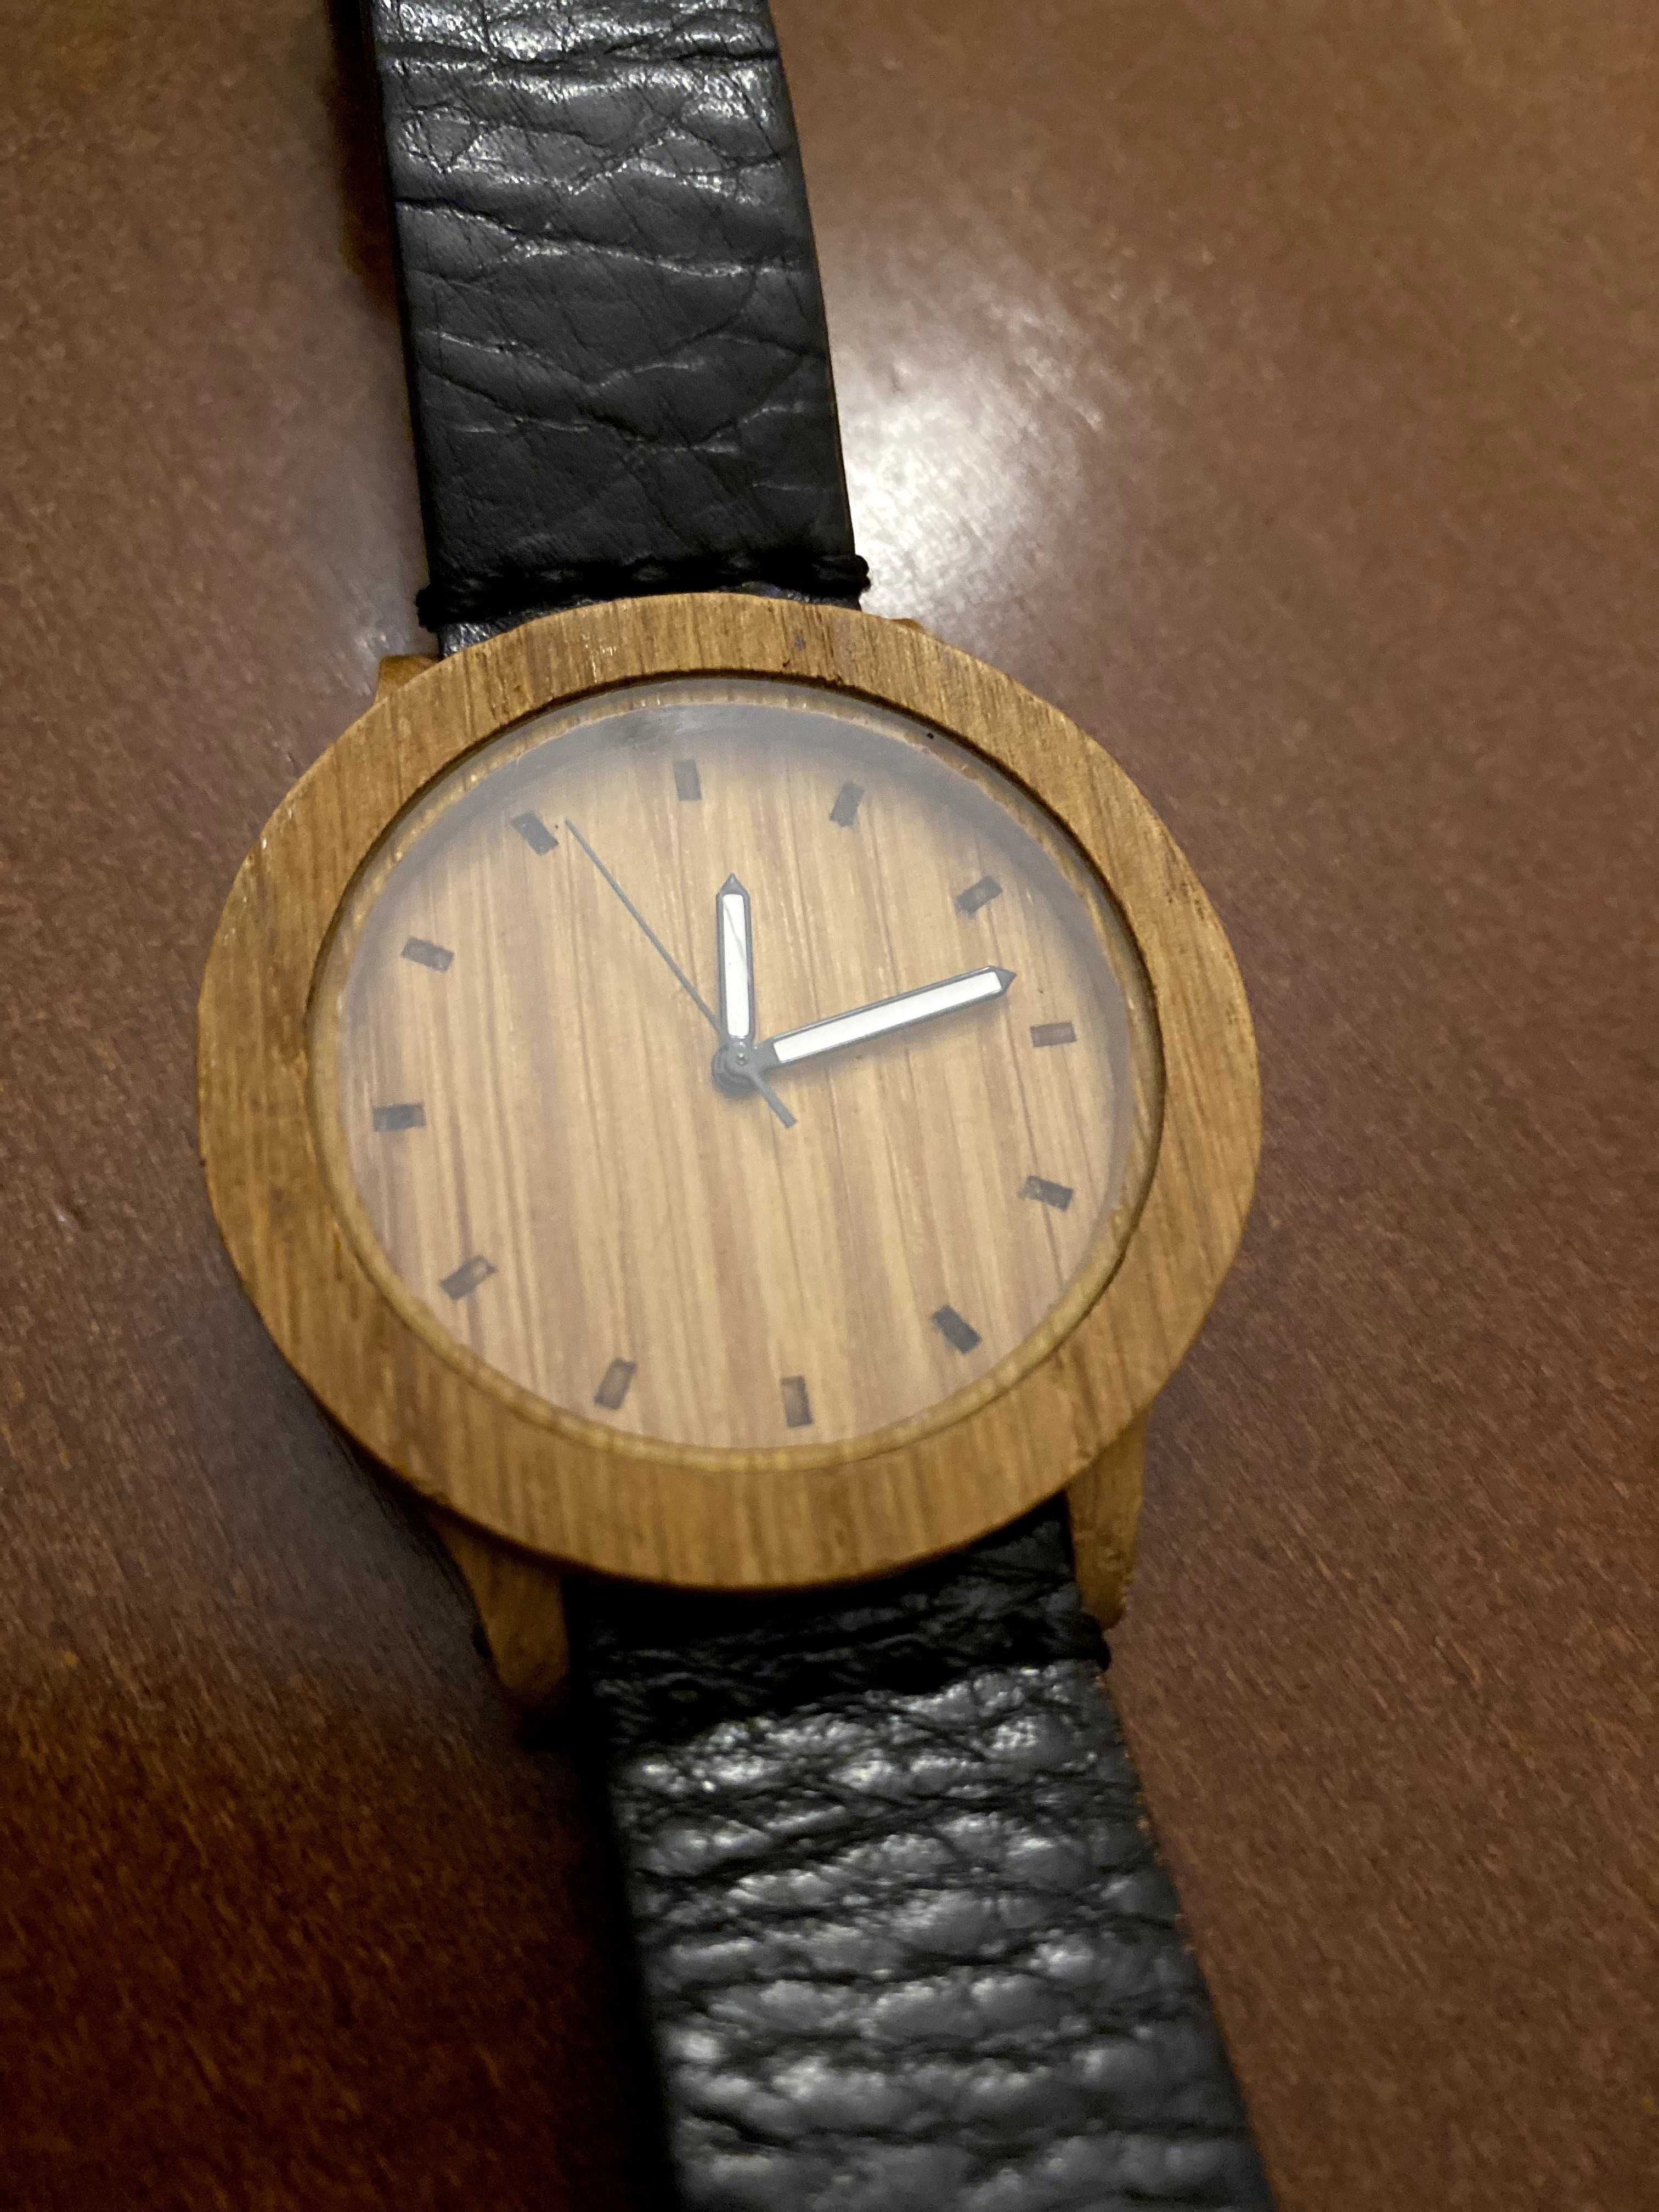 Oryginalny zegarek drewniany WOODLANS handmade in Poland